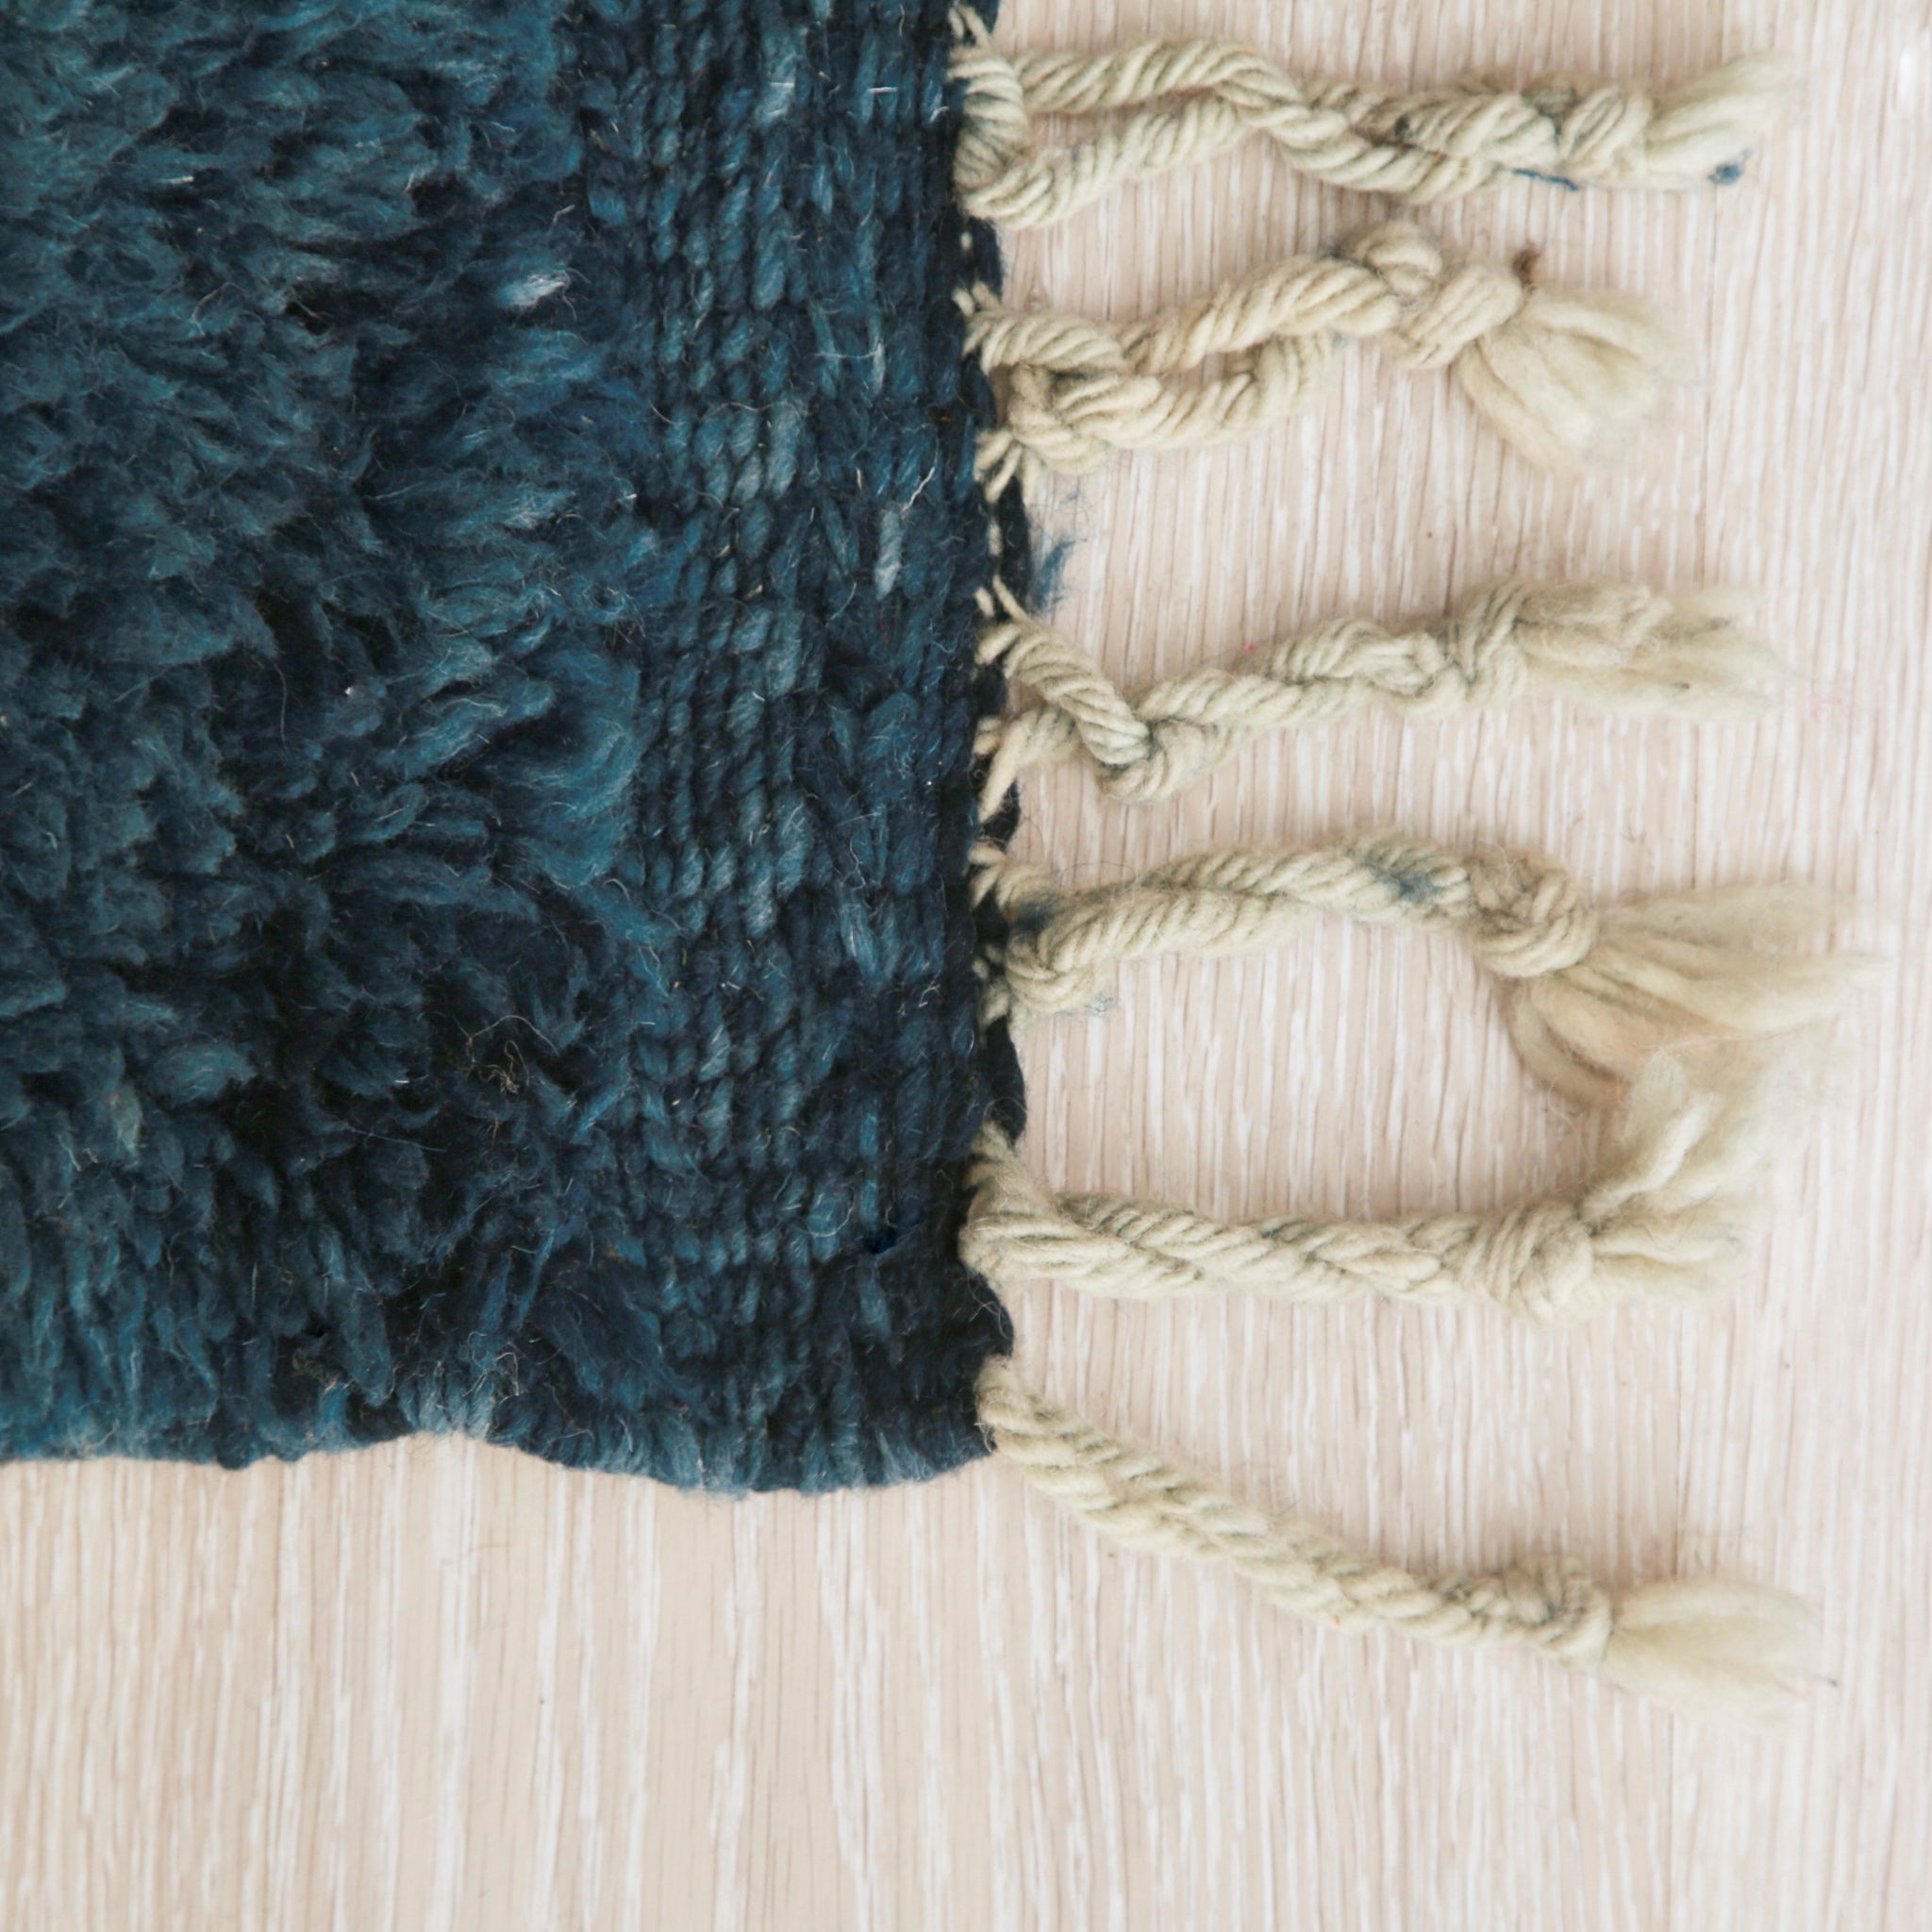 angolo di un tappet beni mrirt con lana tinta di blu scuro, anche il bordo della frangia è blu